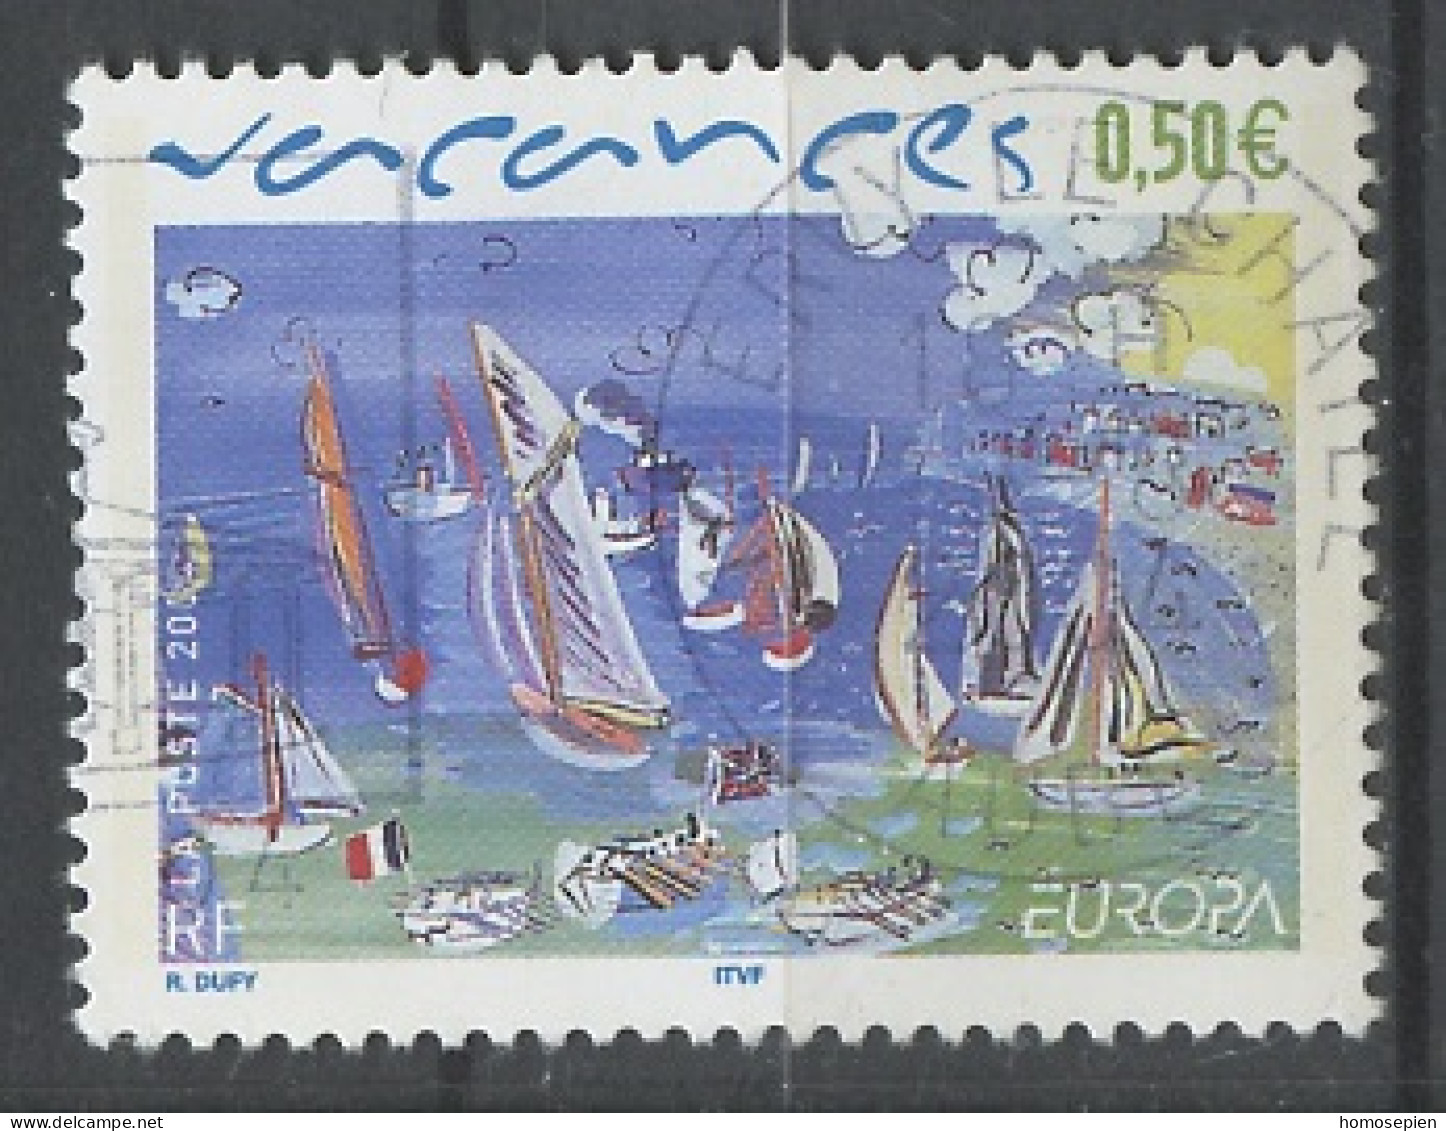 Europa CEPT 2004 France - Frankreich Y&T N°3668 - Michel N°3812 (o) - 0,50€ EUROPA - 2004